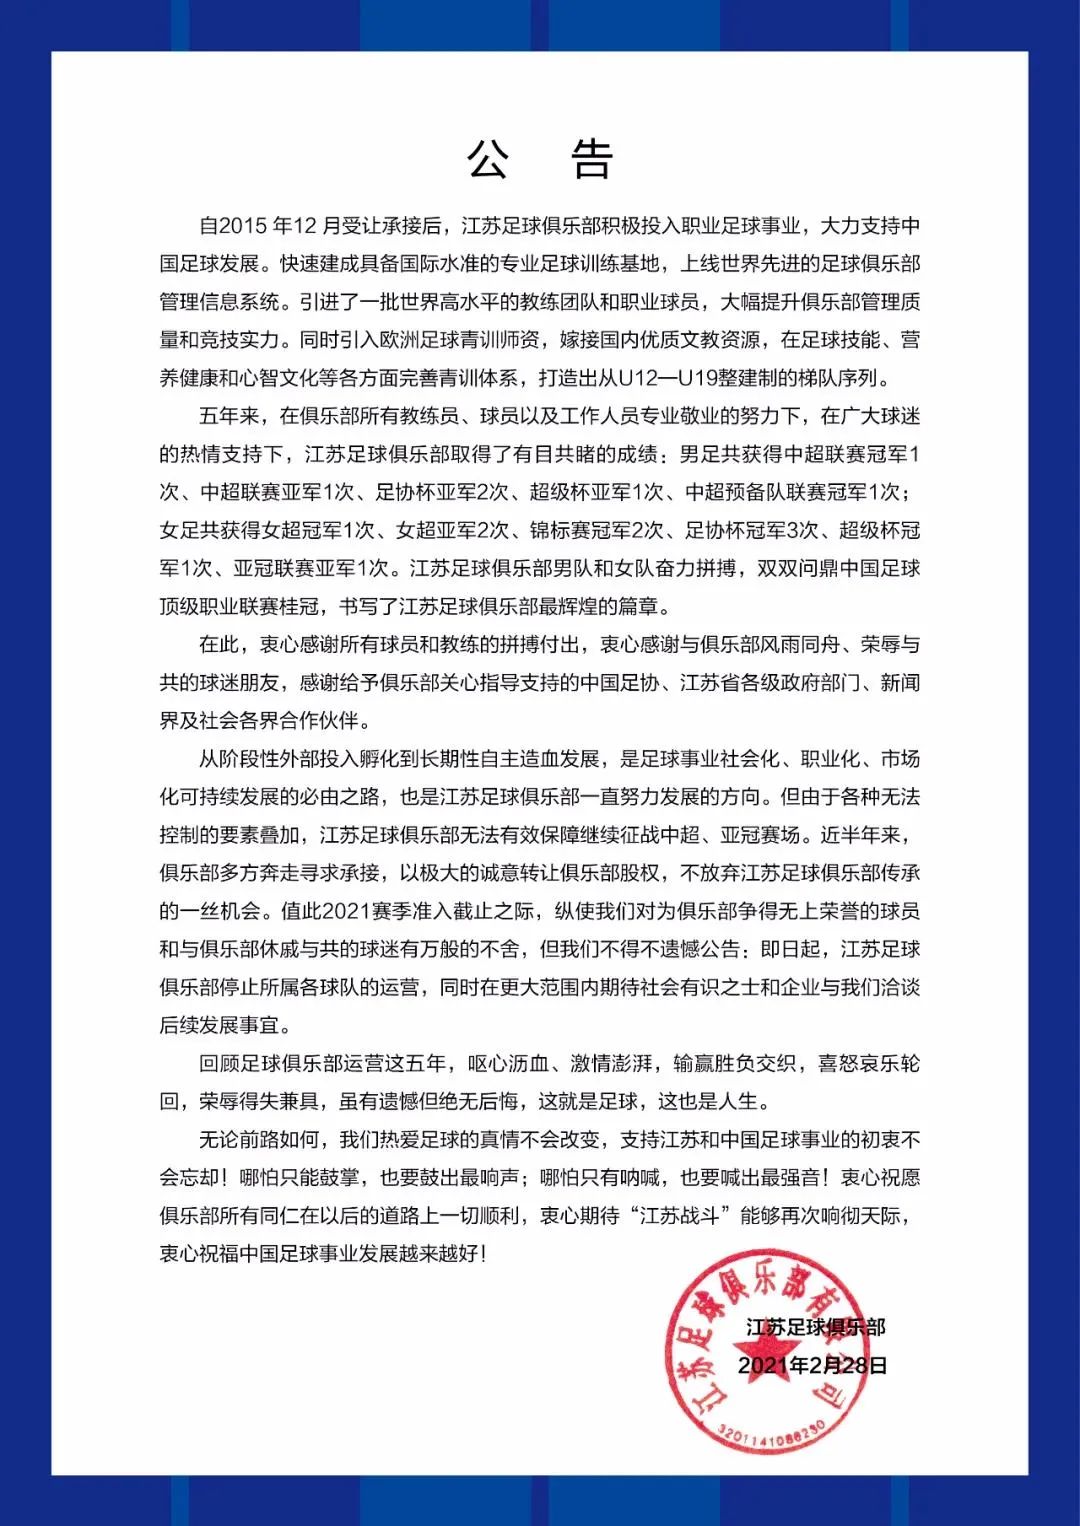 一纸冷冰冰的公告宣告了中超冠军江苏队的告别。